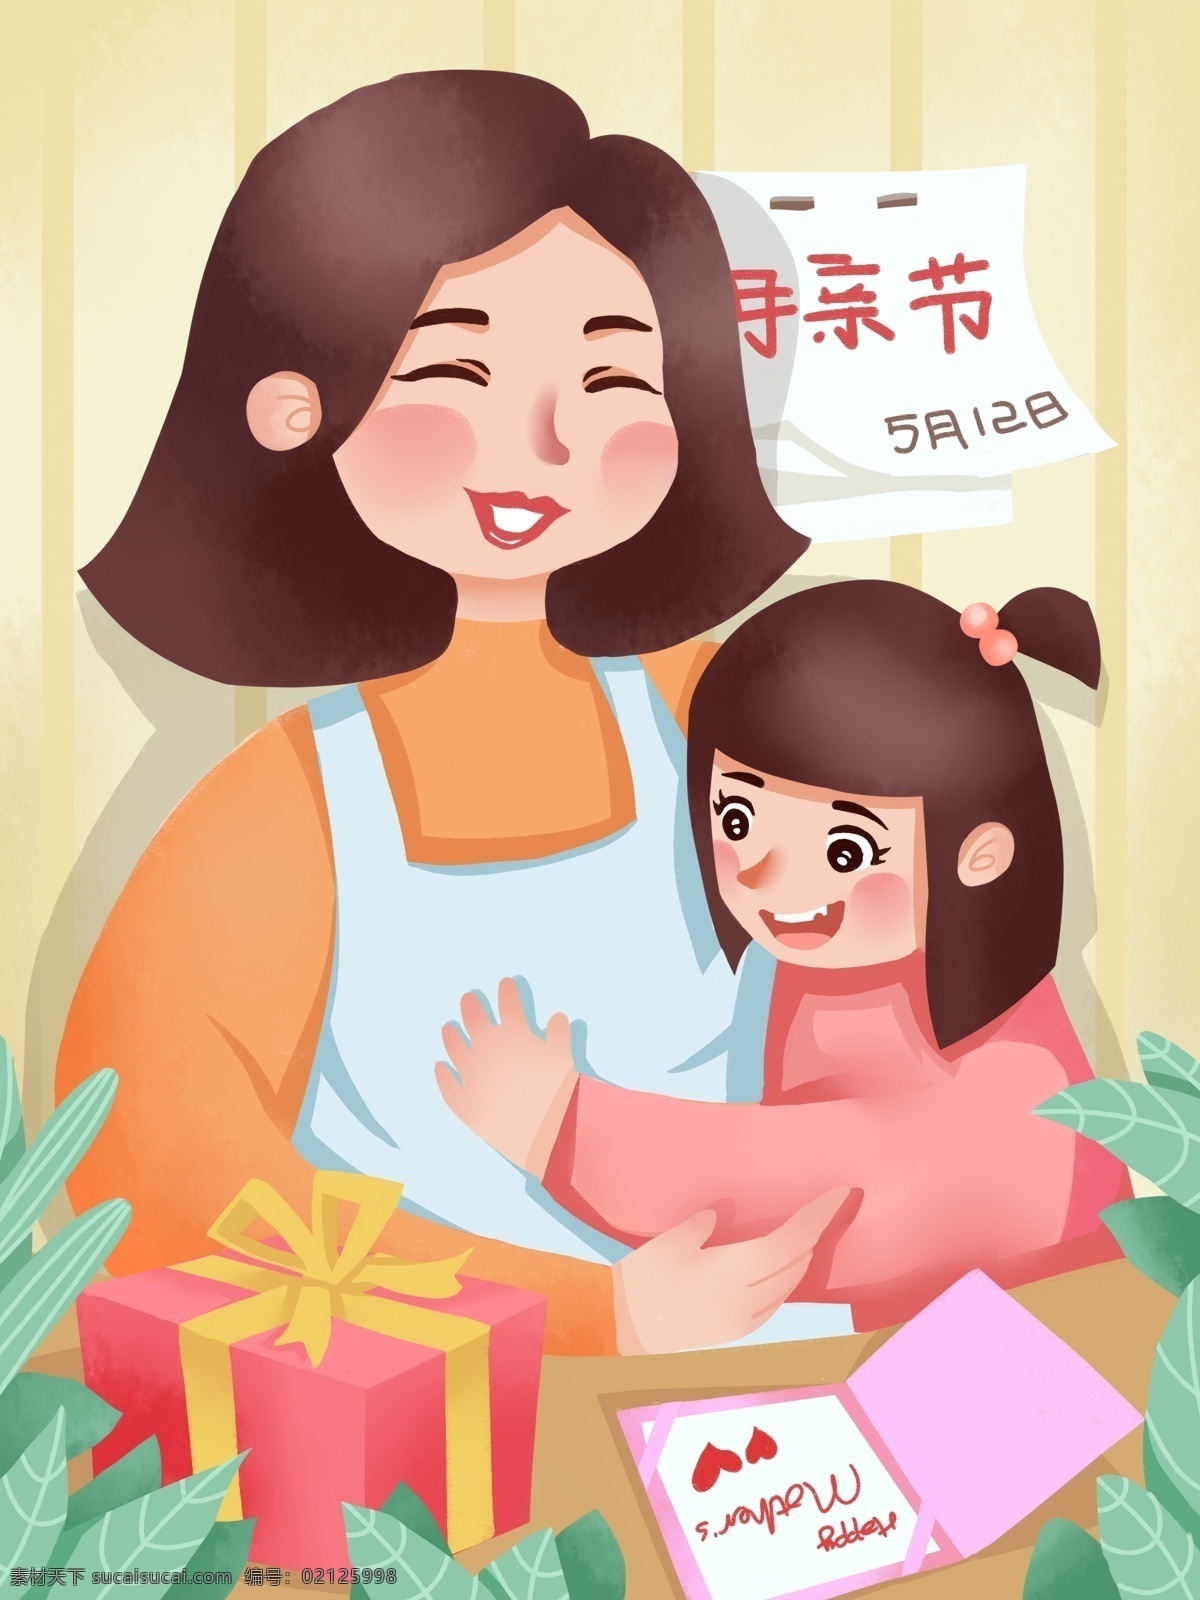 节日 母亲节 妈妈 女儿 小女孩 拥抱 礼物 贺卡 插画 原创 女人 插图 配图 手绘 小清新